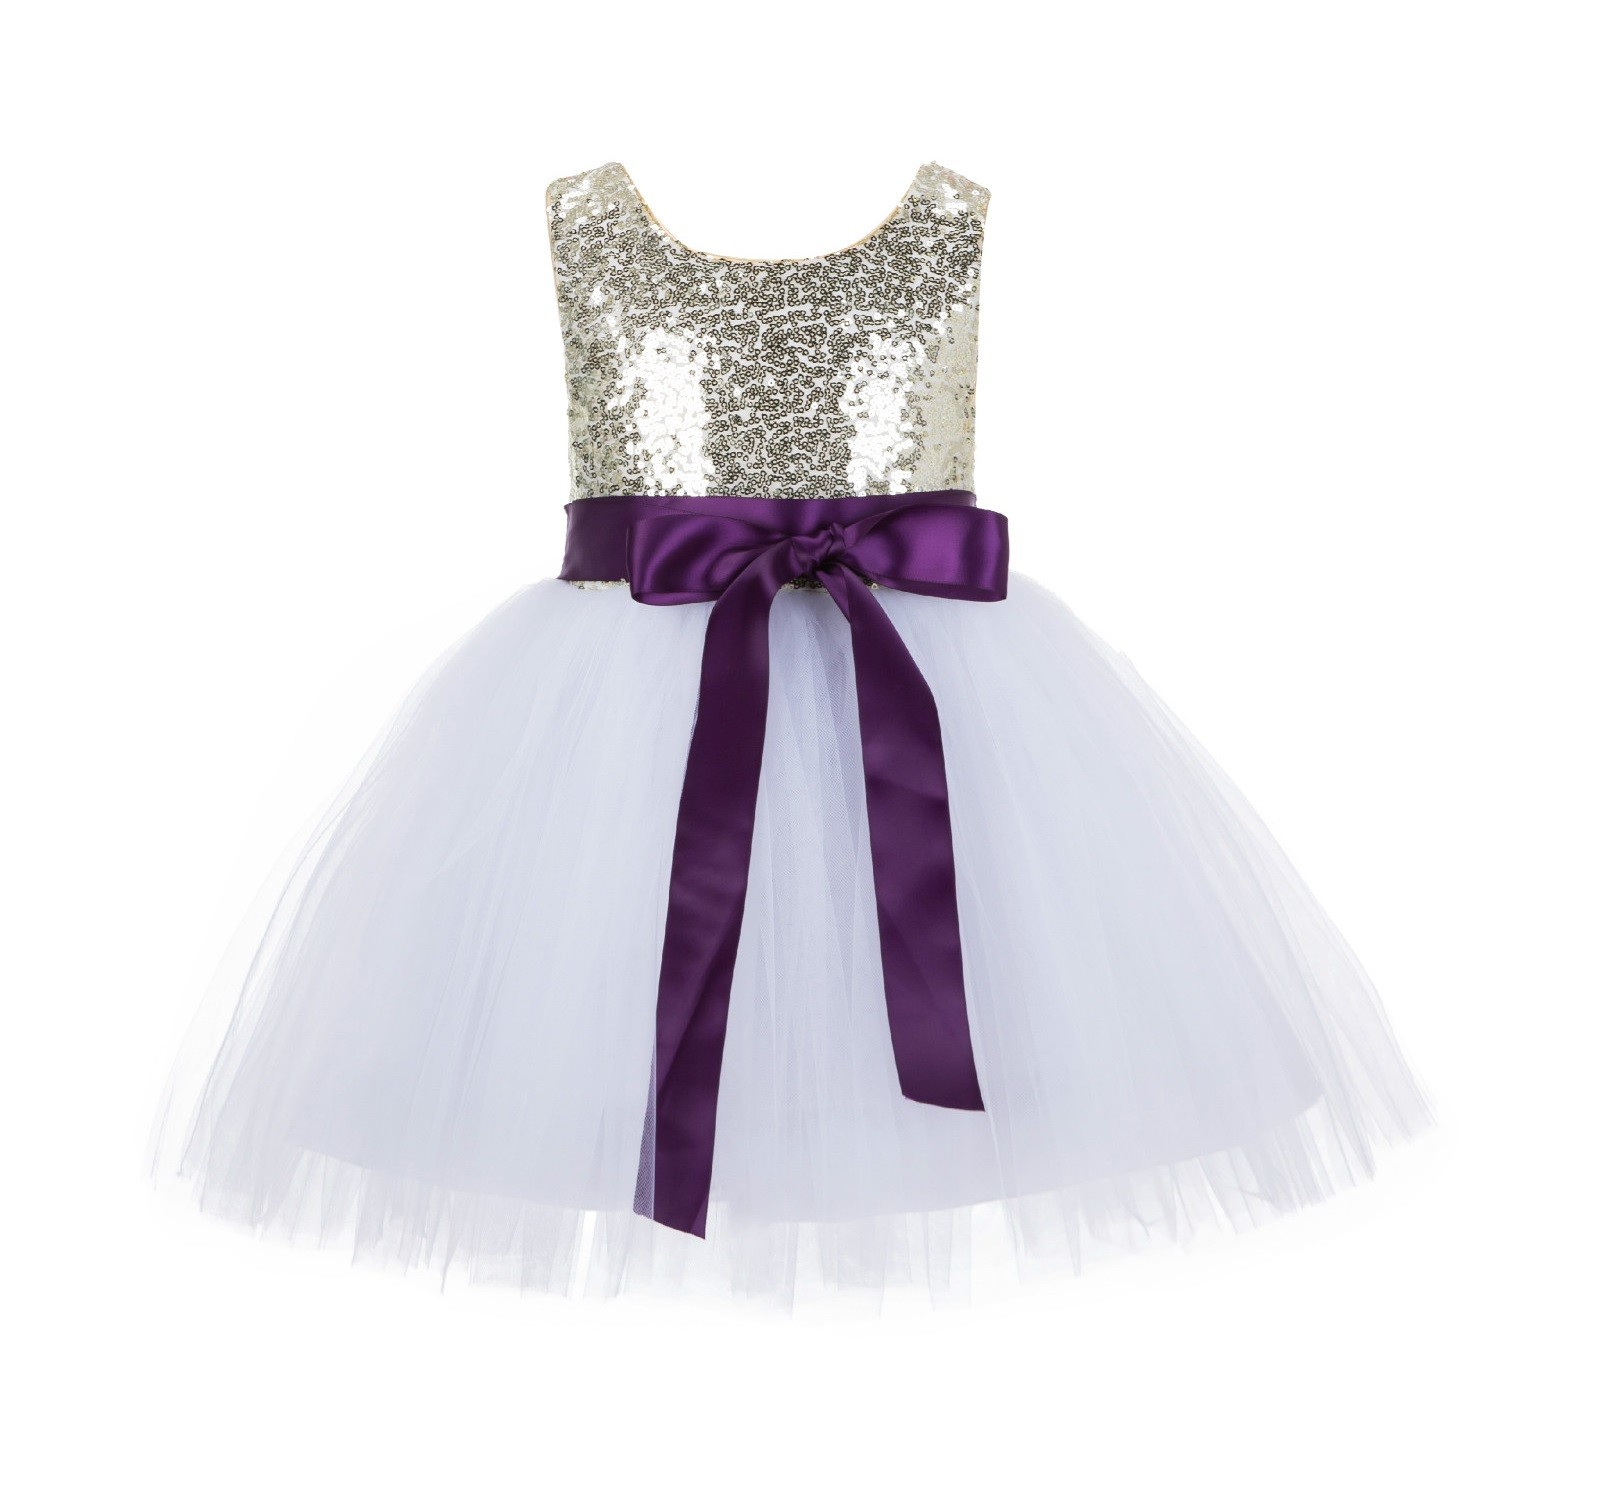 Gold/White/Purple Glitter Sequin Tulle Flower Girl Dress Recital Ceremony 123S